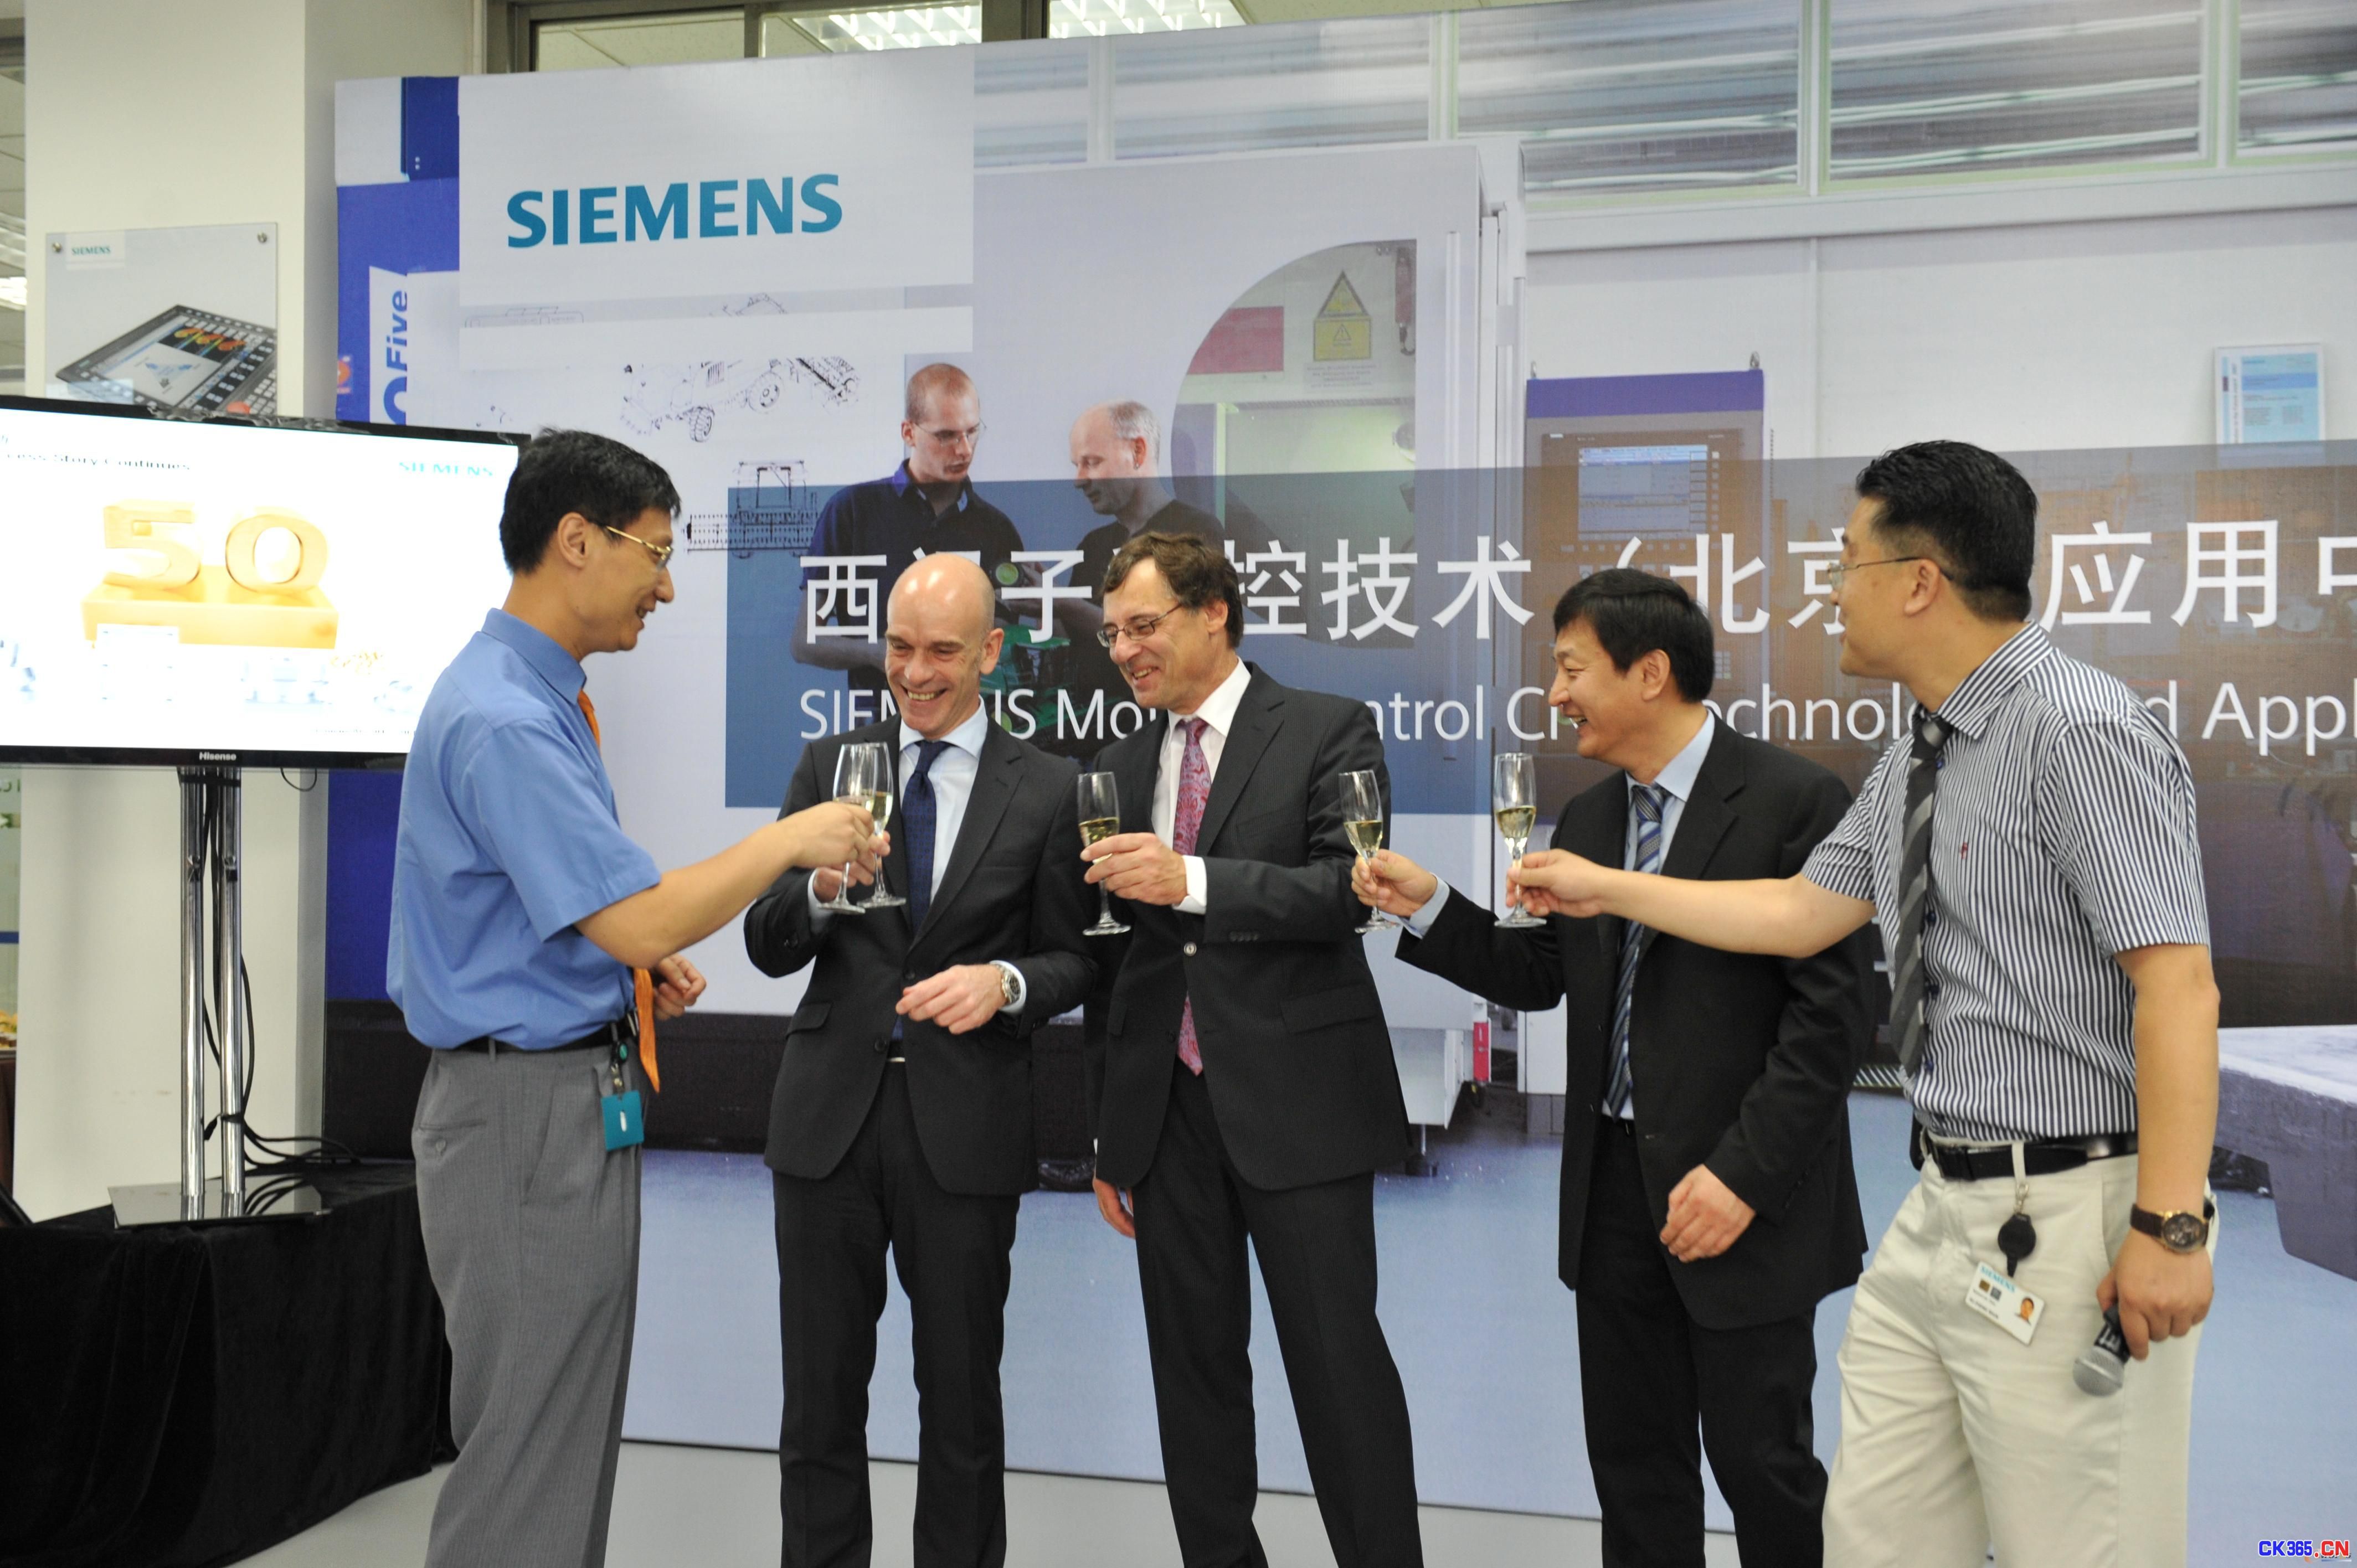 西门子在北京创立中国首家数控技术应用中心